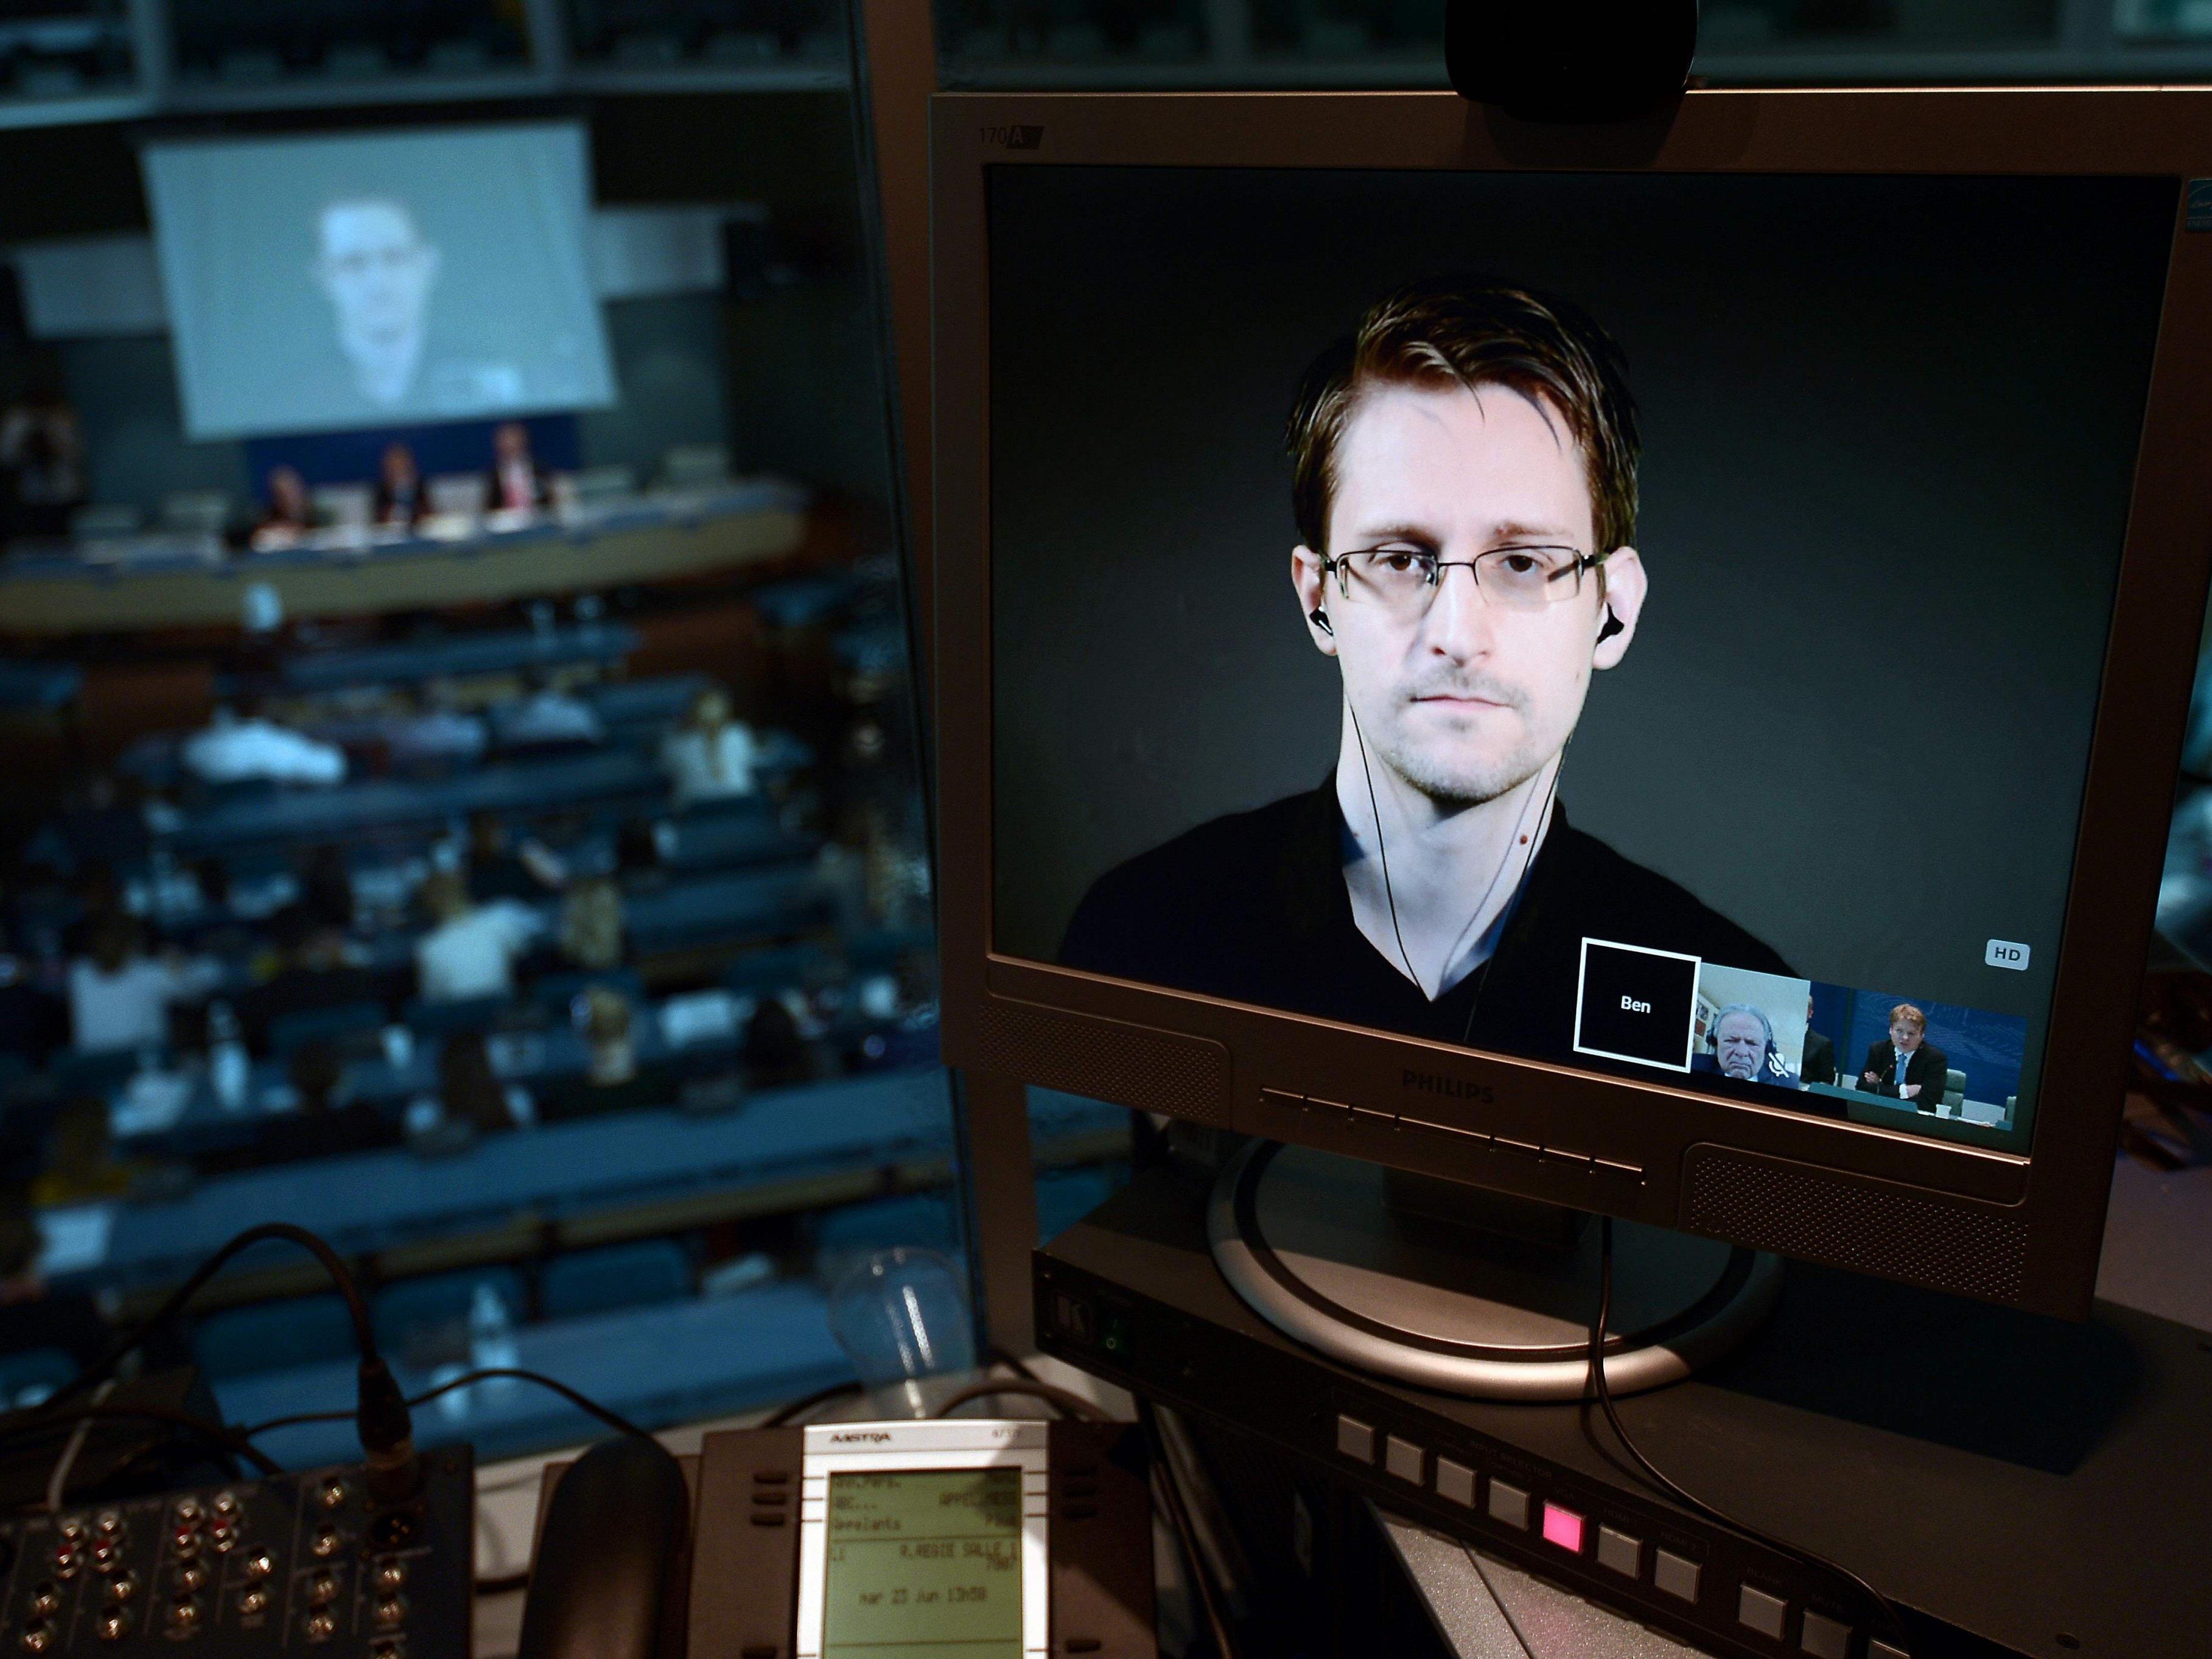 Edward Snowden ist ehemaliger CIA-Mitarbeiter und amerikanischer Whistleblower.